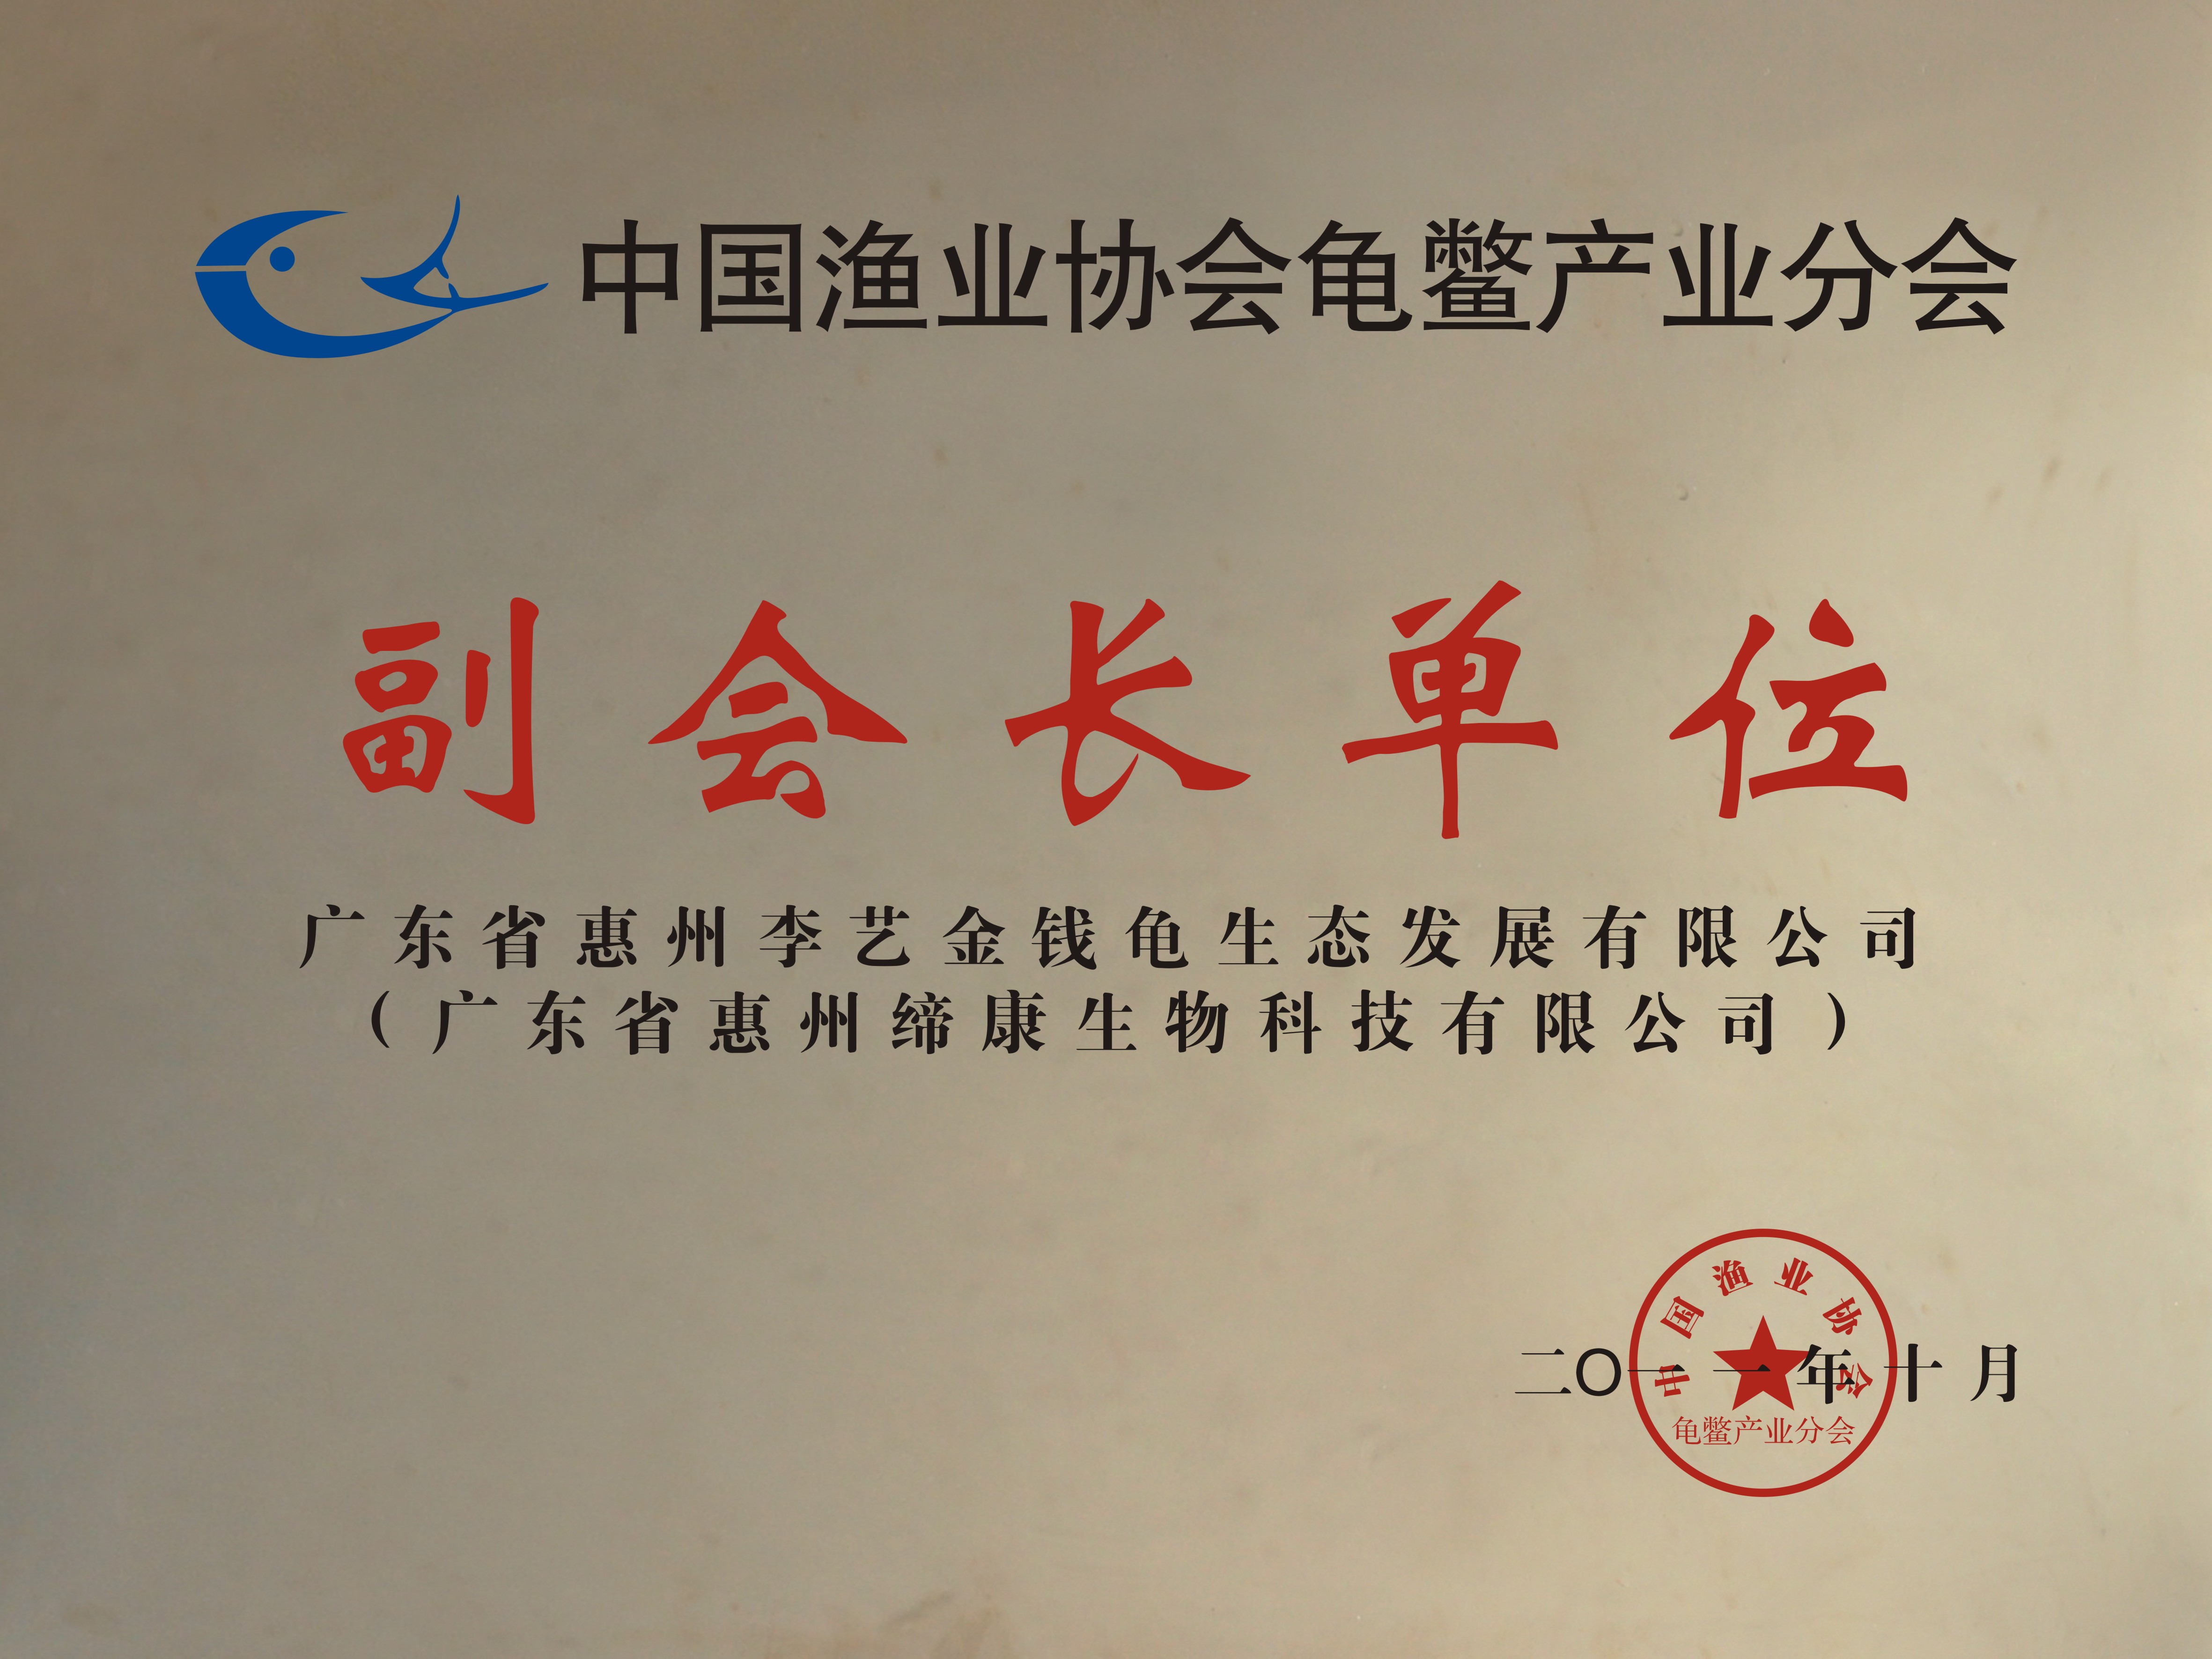 中國漁業協會龜鱉產業分會副會長單位